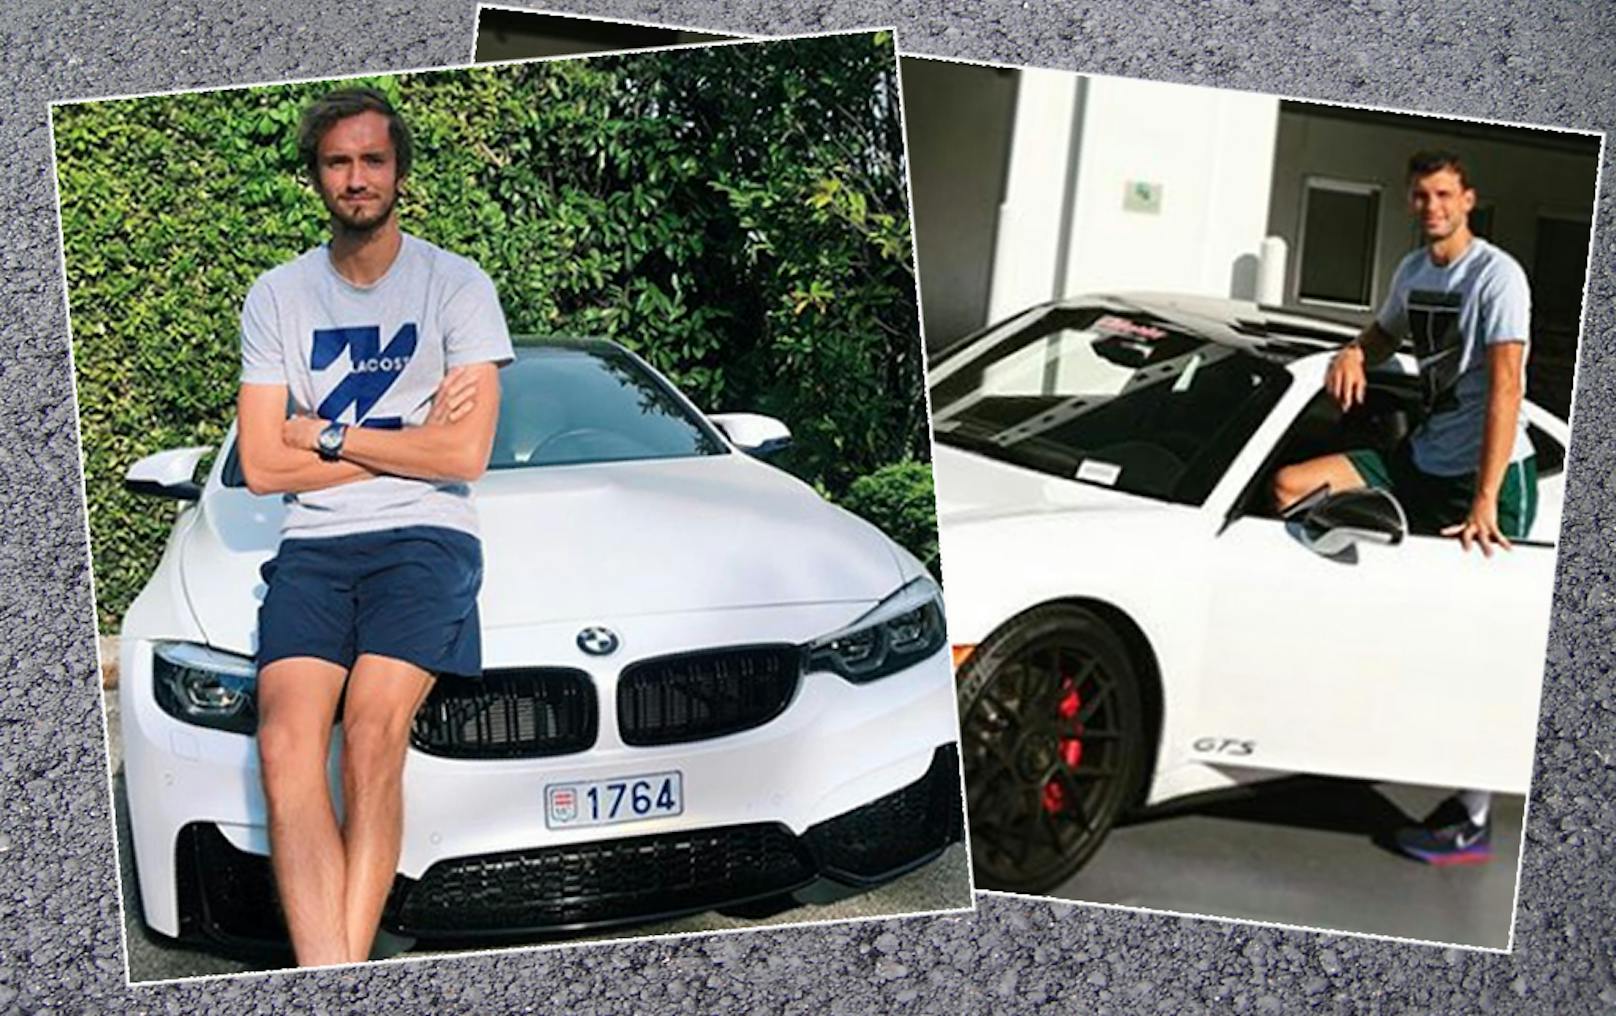 Daniil Medvedev und Grigor Dimitrov haben ihren Führerschein und ihre Luxus-Autos verloren